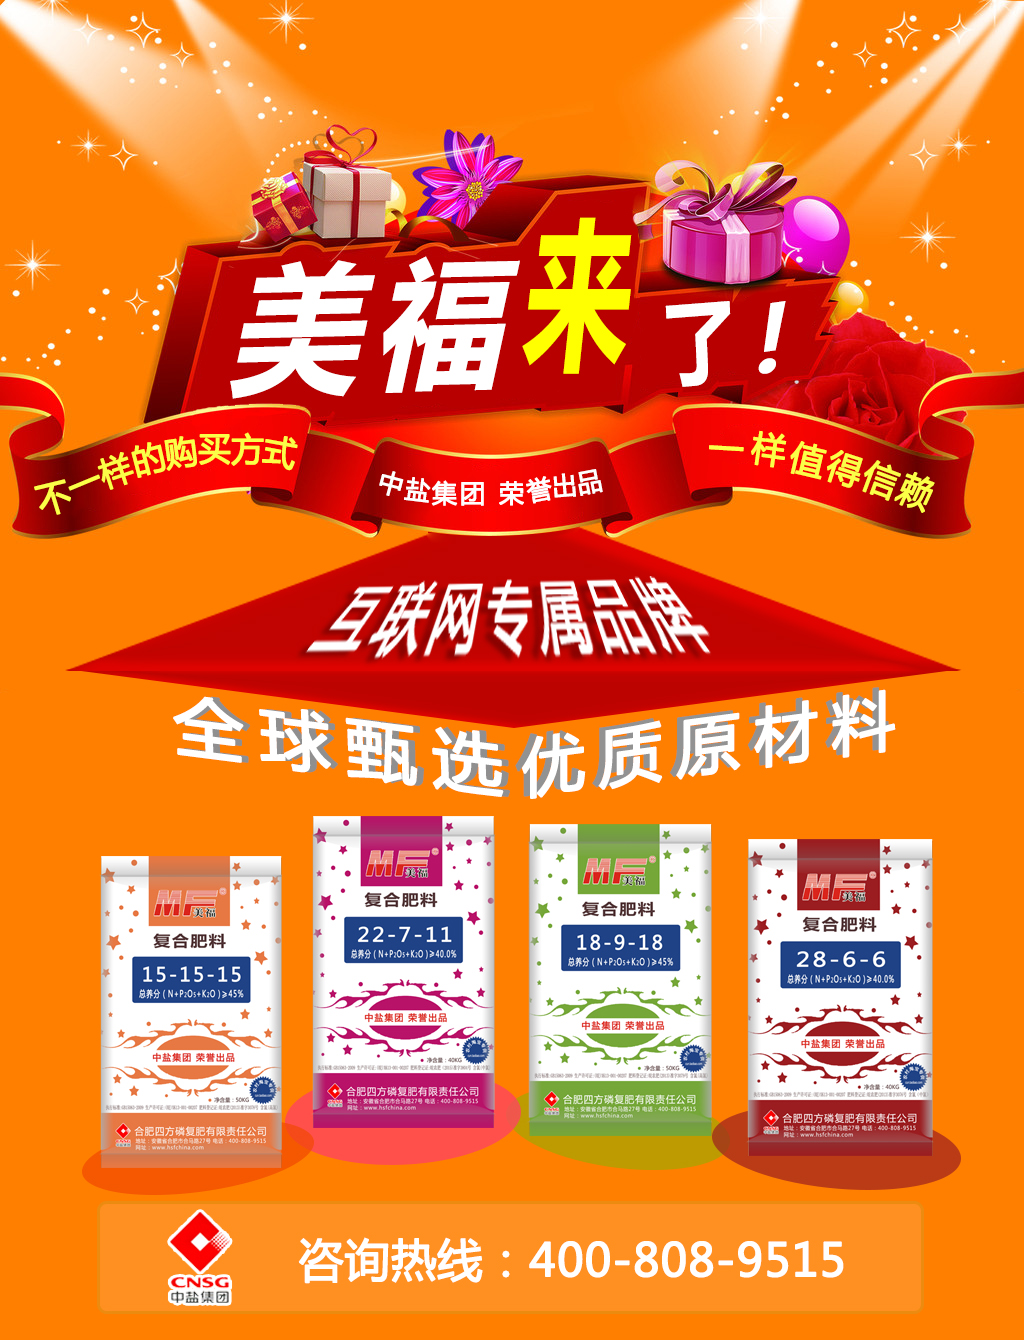 化肥生产厂家红四方推出新品牌——美福